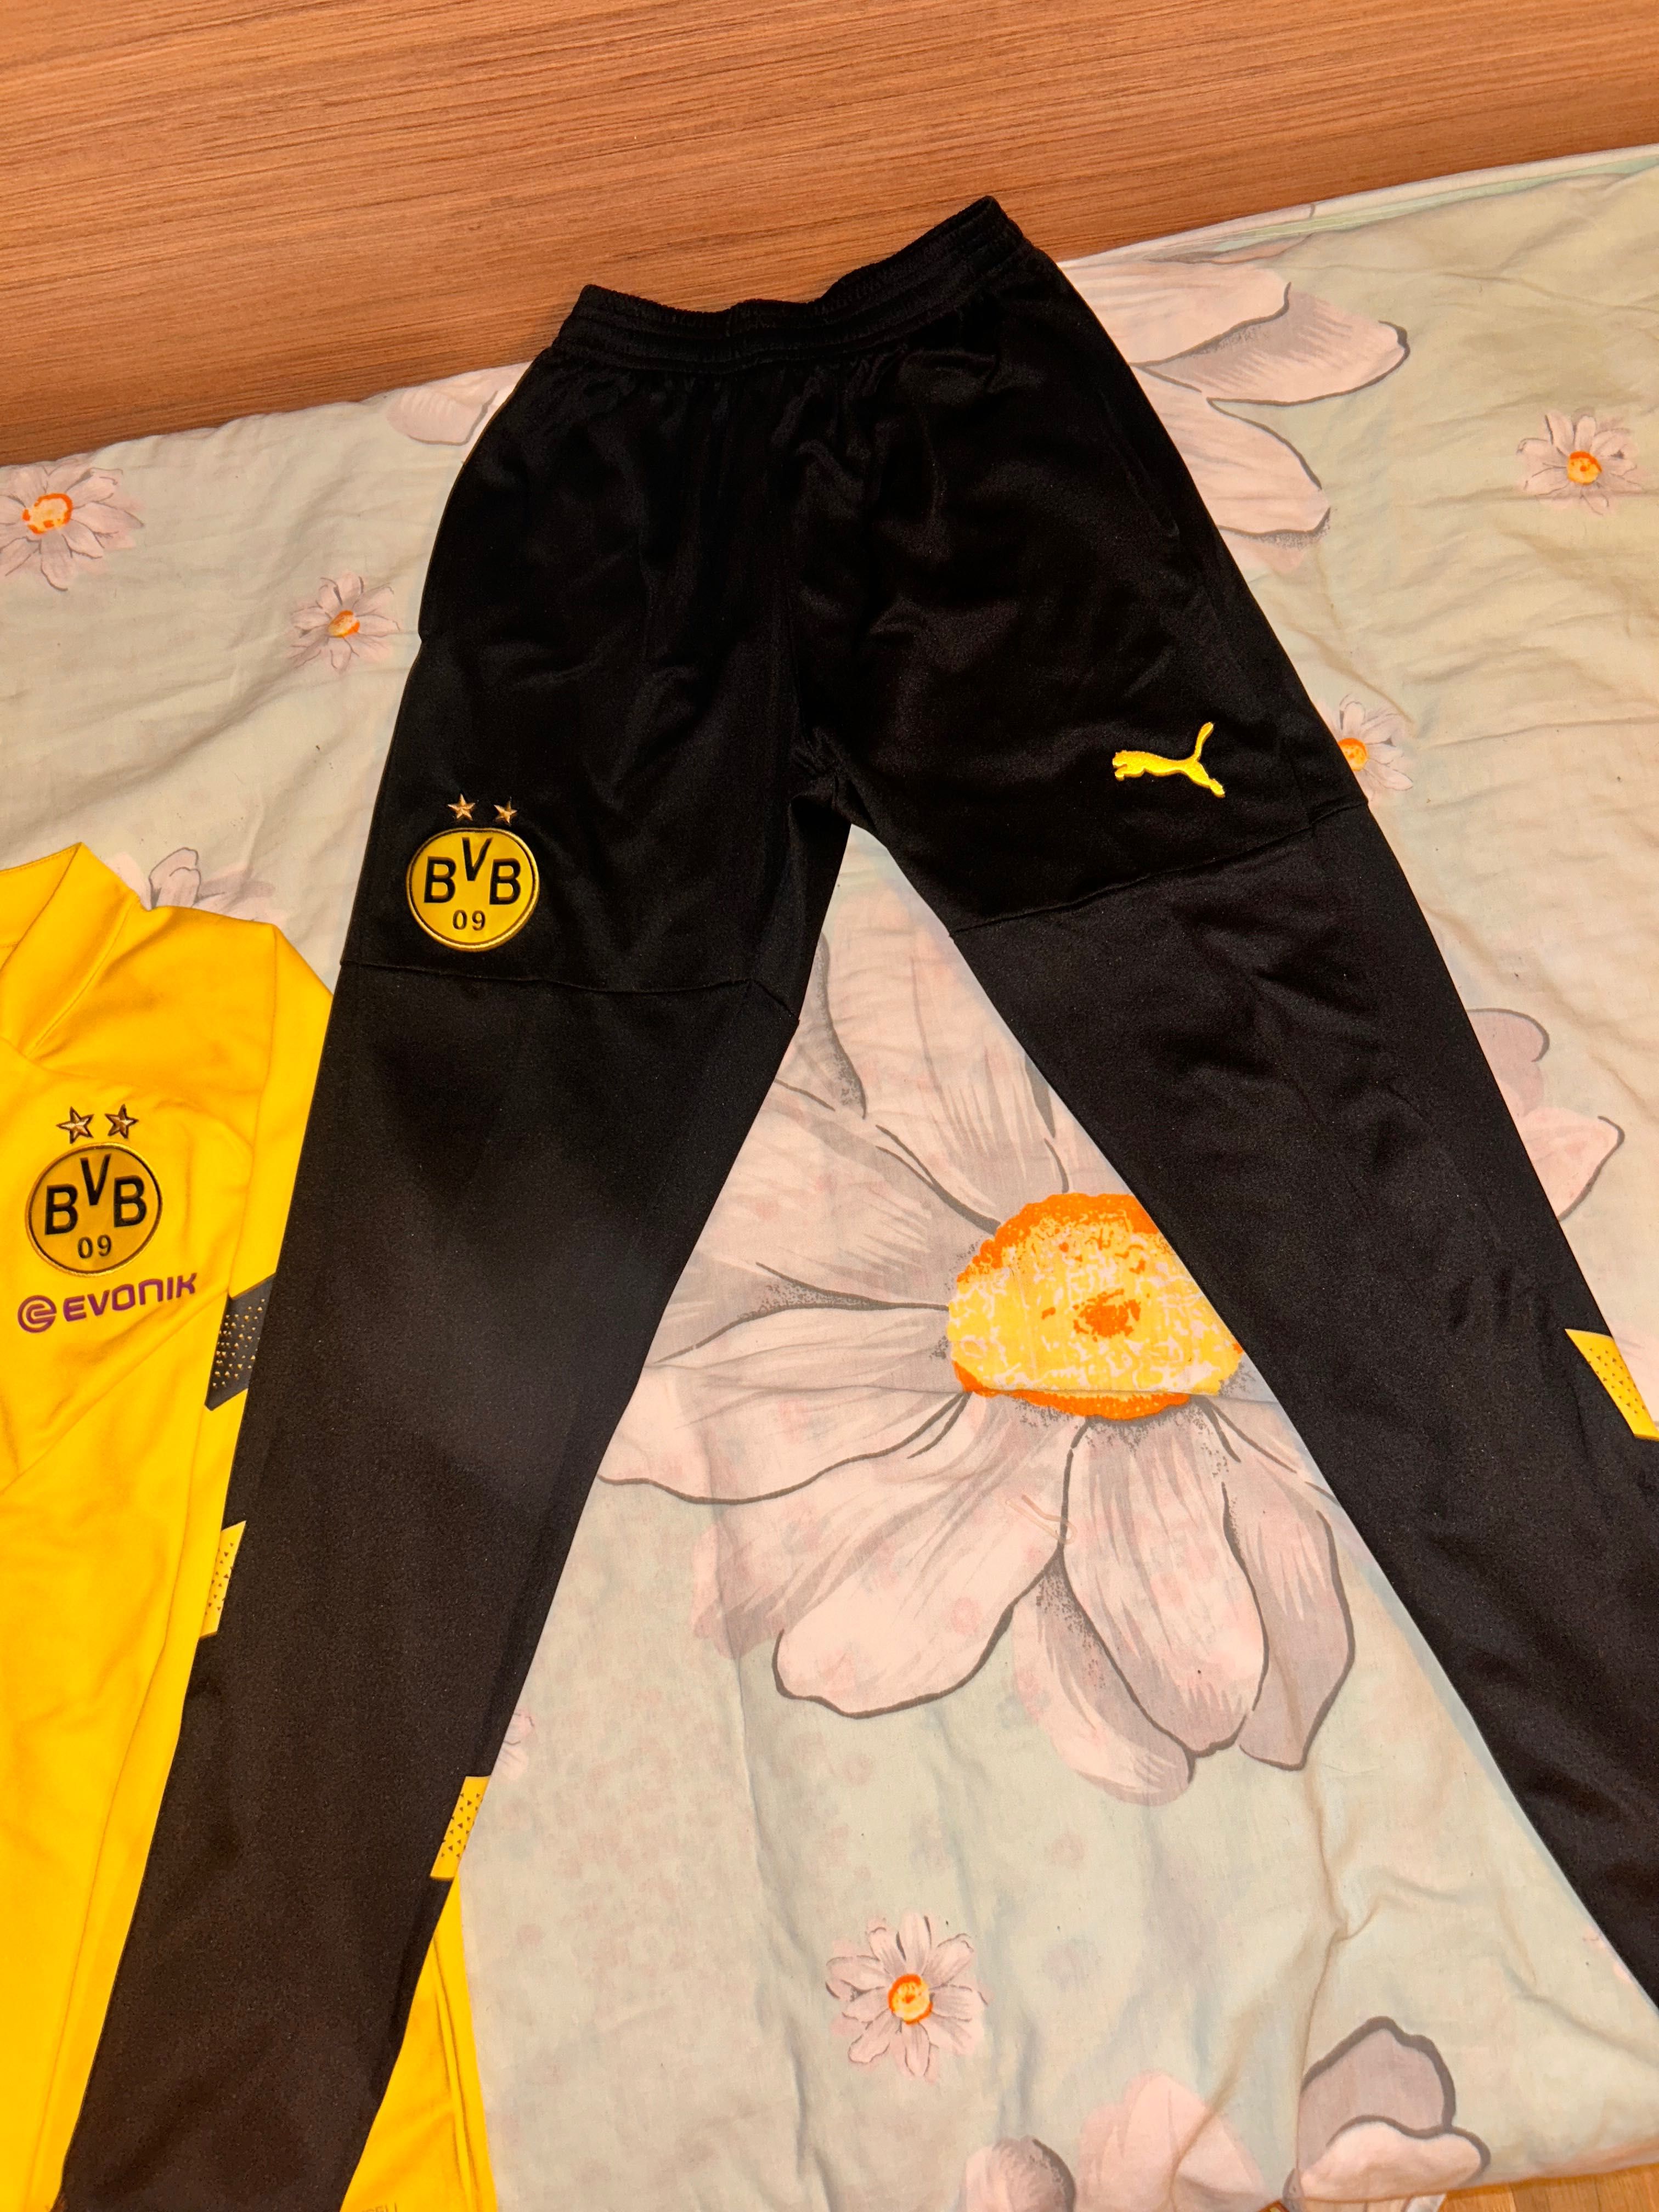 Puma Borussia Dortmund комплект